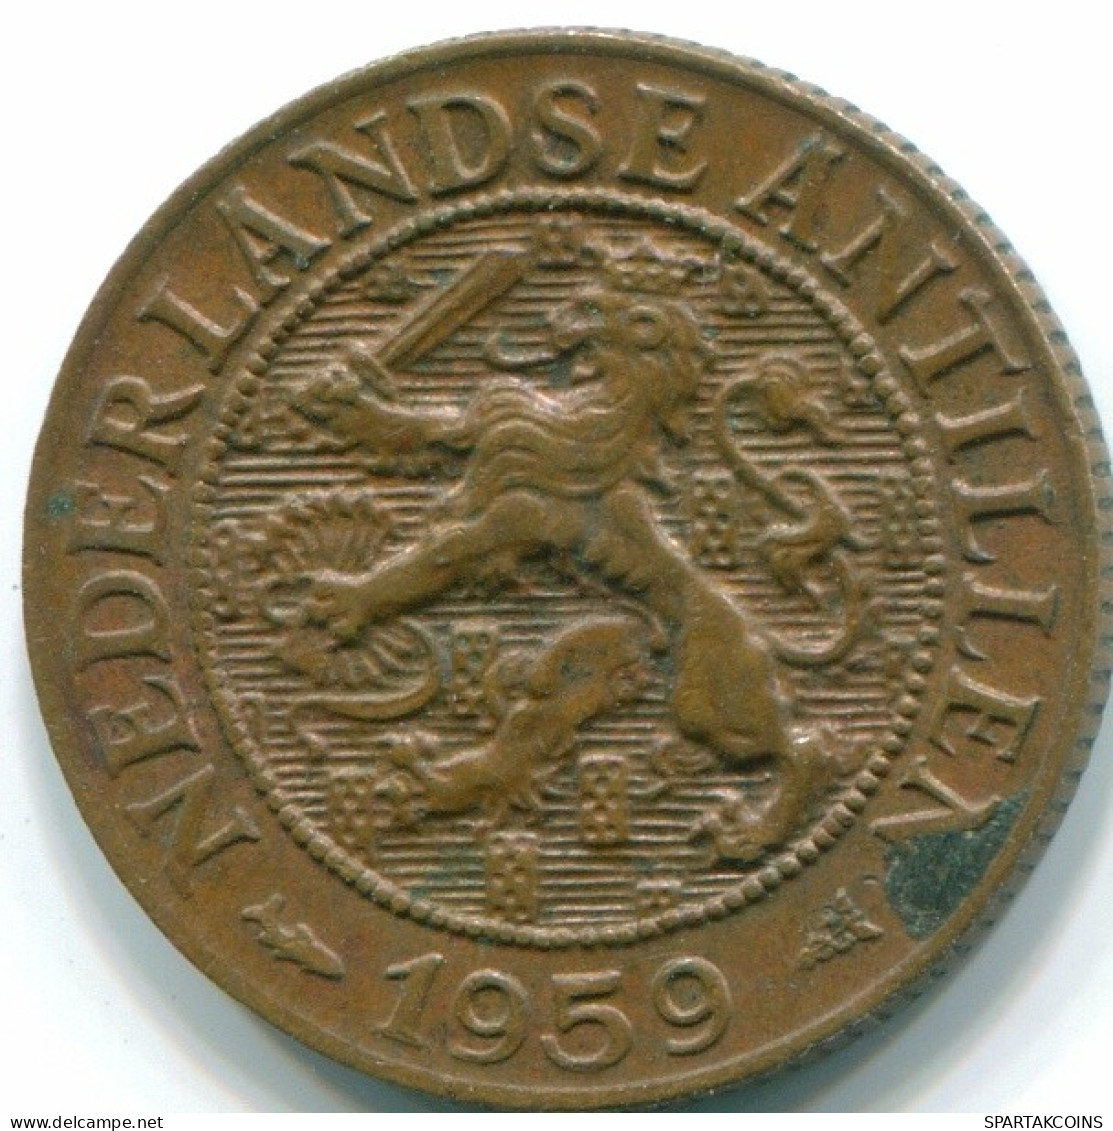 1 CENT 1959 NETHERLANDS ANTILLES Bronze Fish Colonial Coin #S11054.U.A - Antilles Néerlandaises